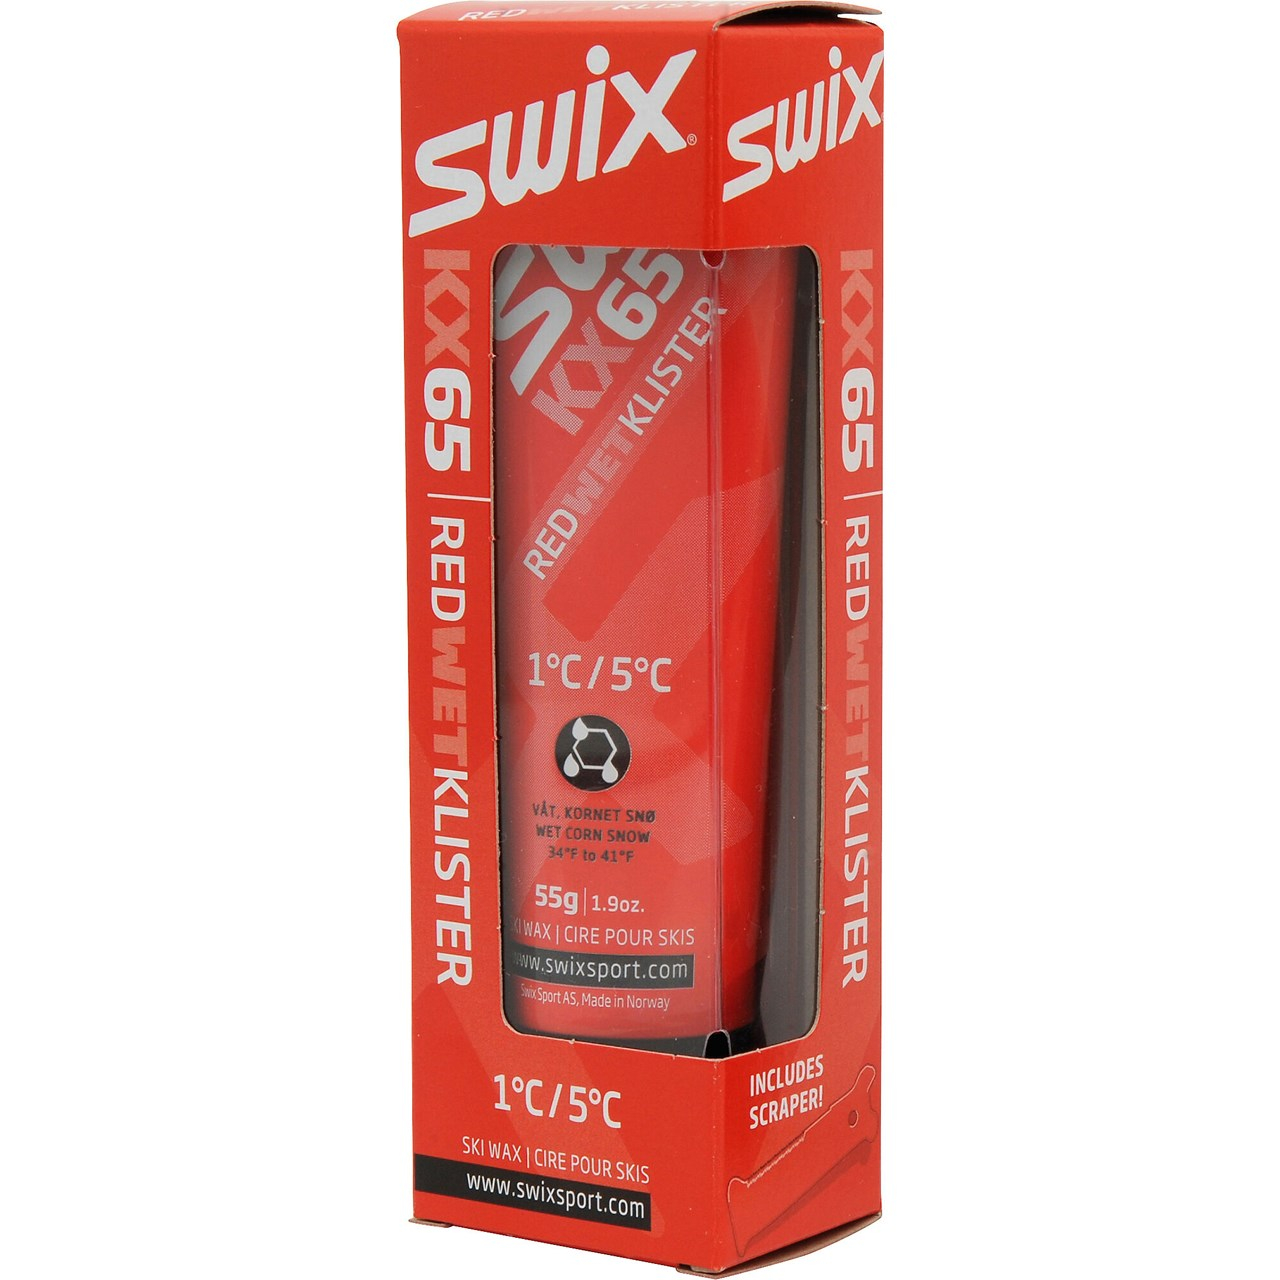 Swix KX65 Red Klister, 1C to 5C-0